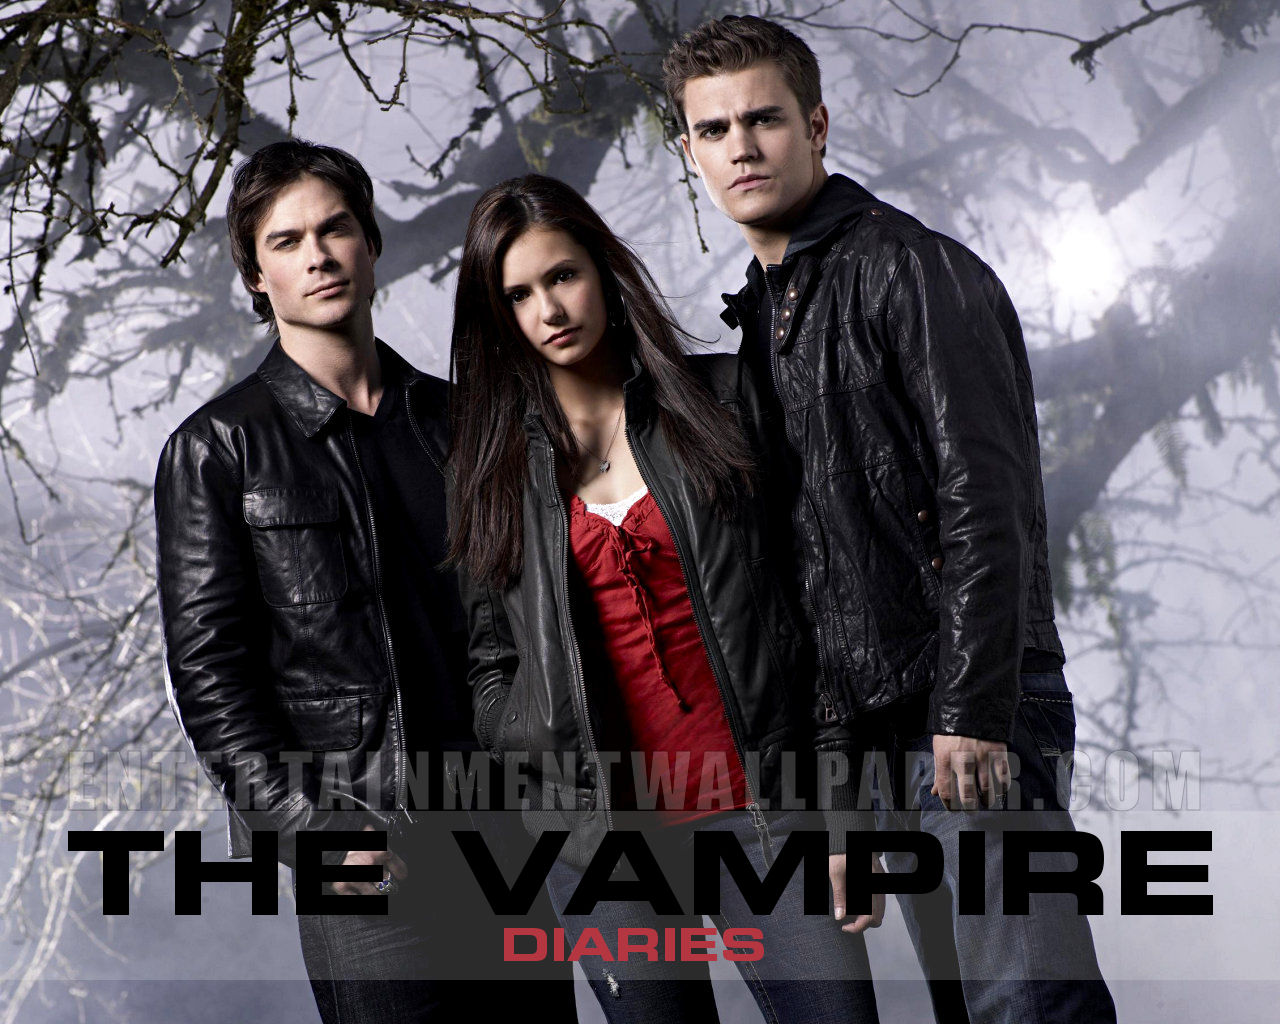 The Vampire Diaries [Resenha de séries] - Na Nossa Estante